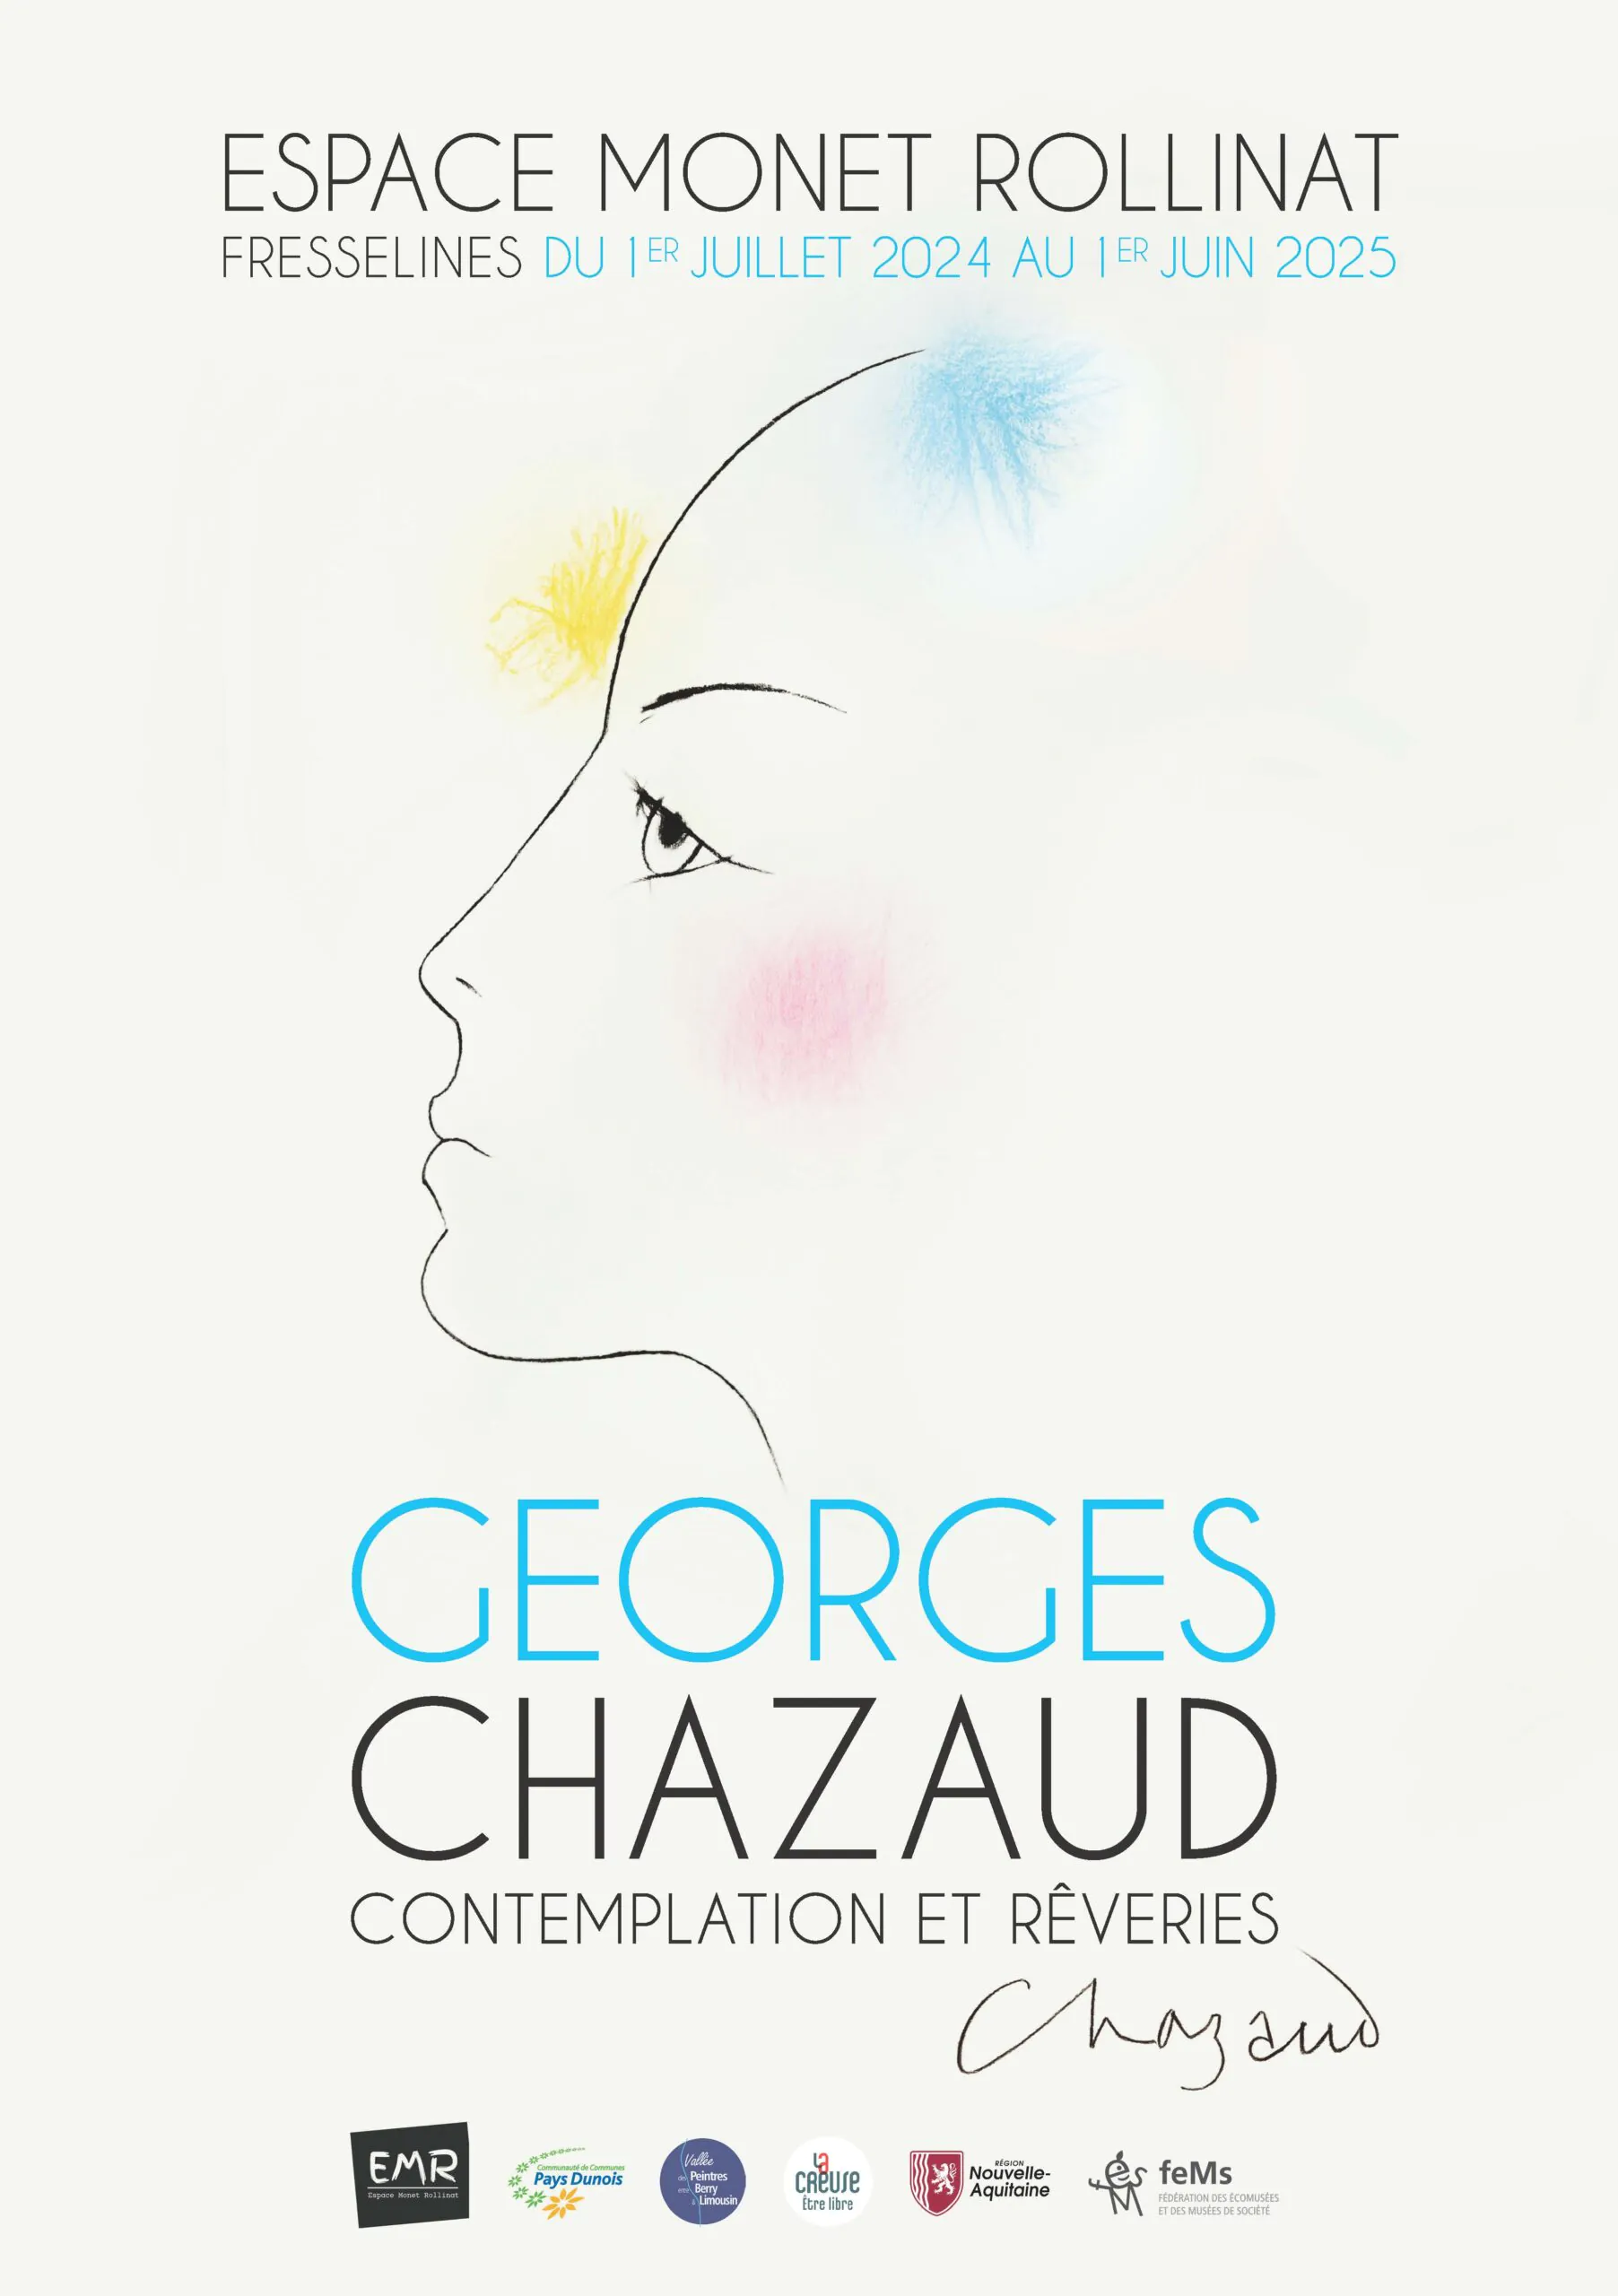 Exposition Georges Chazaud "Contemplation et rêveries"